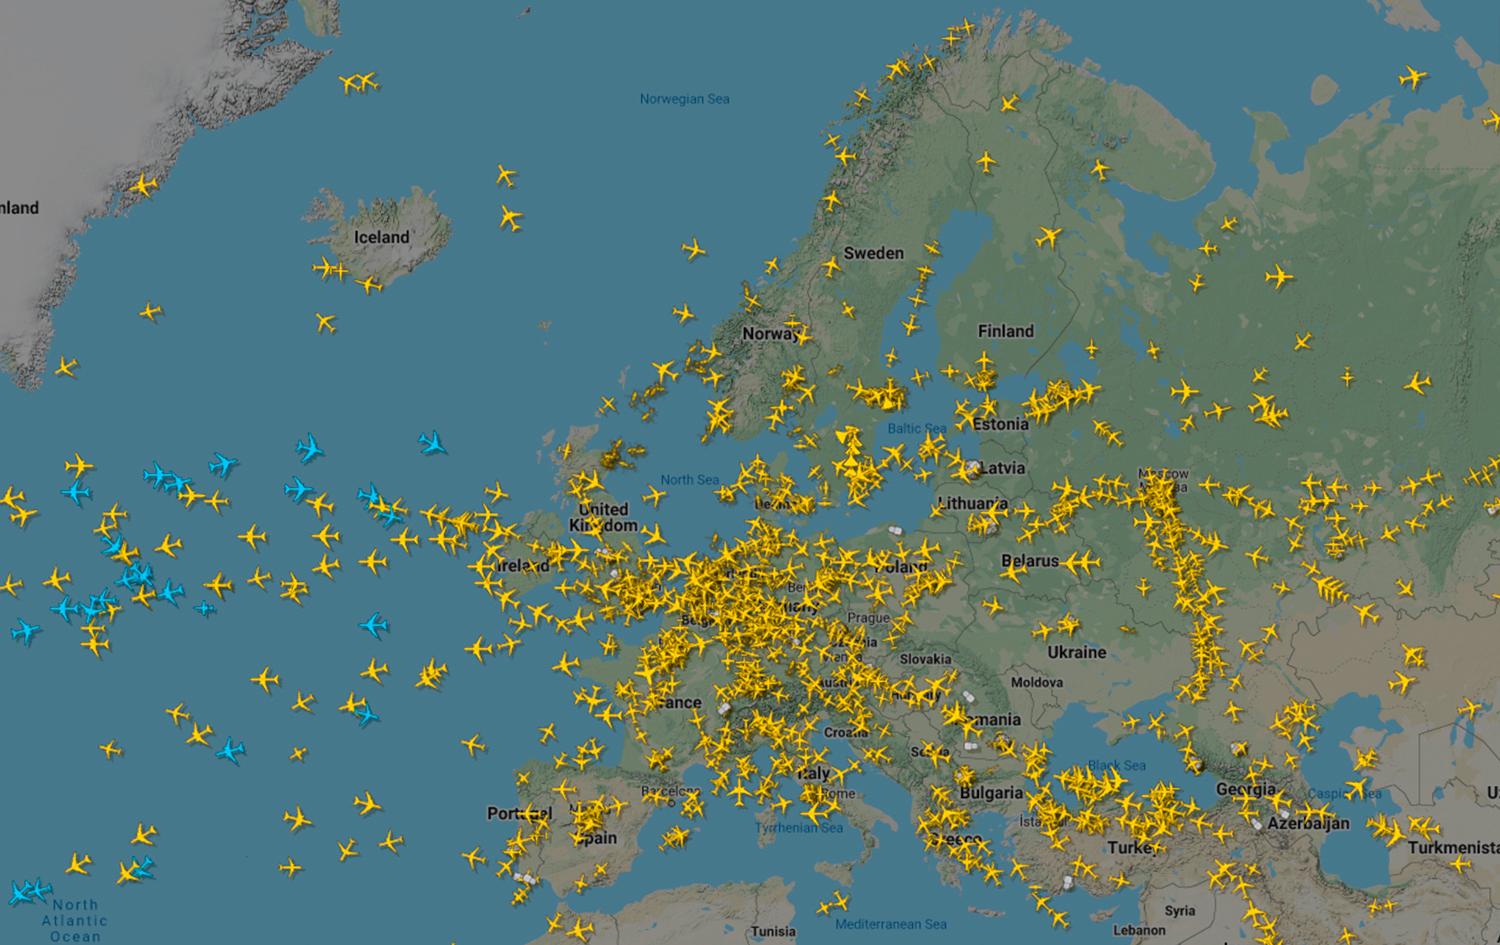 En översikt över flygtrafiken över Europa den 25 mars 2020 från sajten Flightradar24. De senaste månaderna har flytrafiken i världen kraftigt minskat på grund av åtgärder för att bromsa coronavirusets spridning.